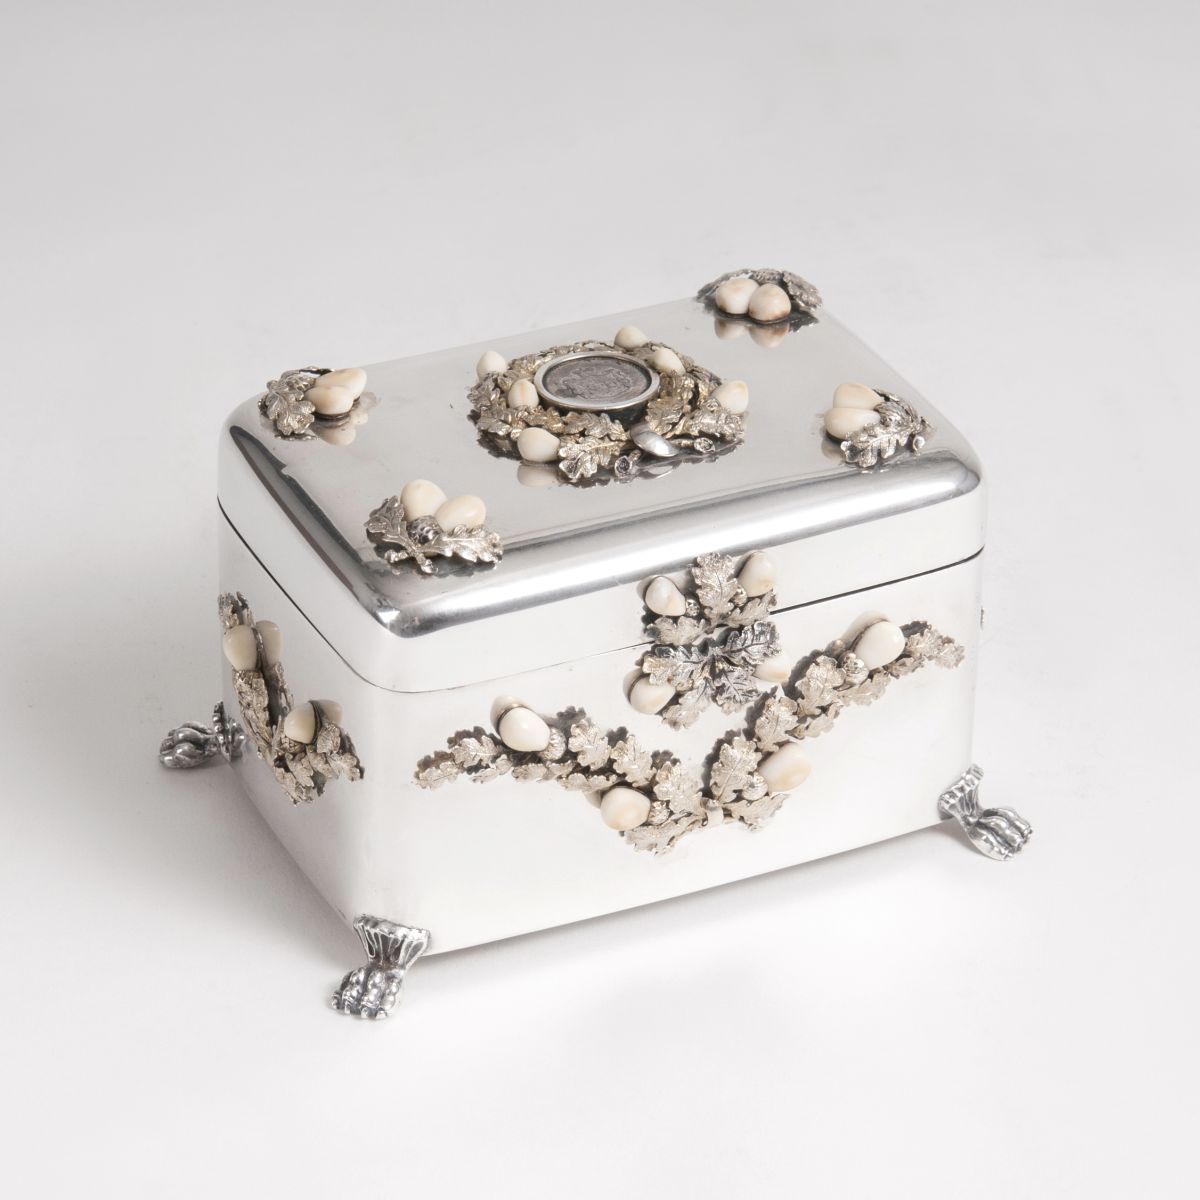 A silver box with grandel decor